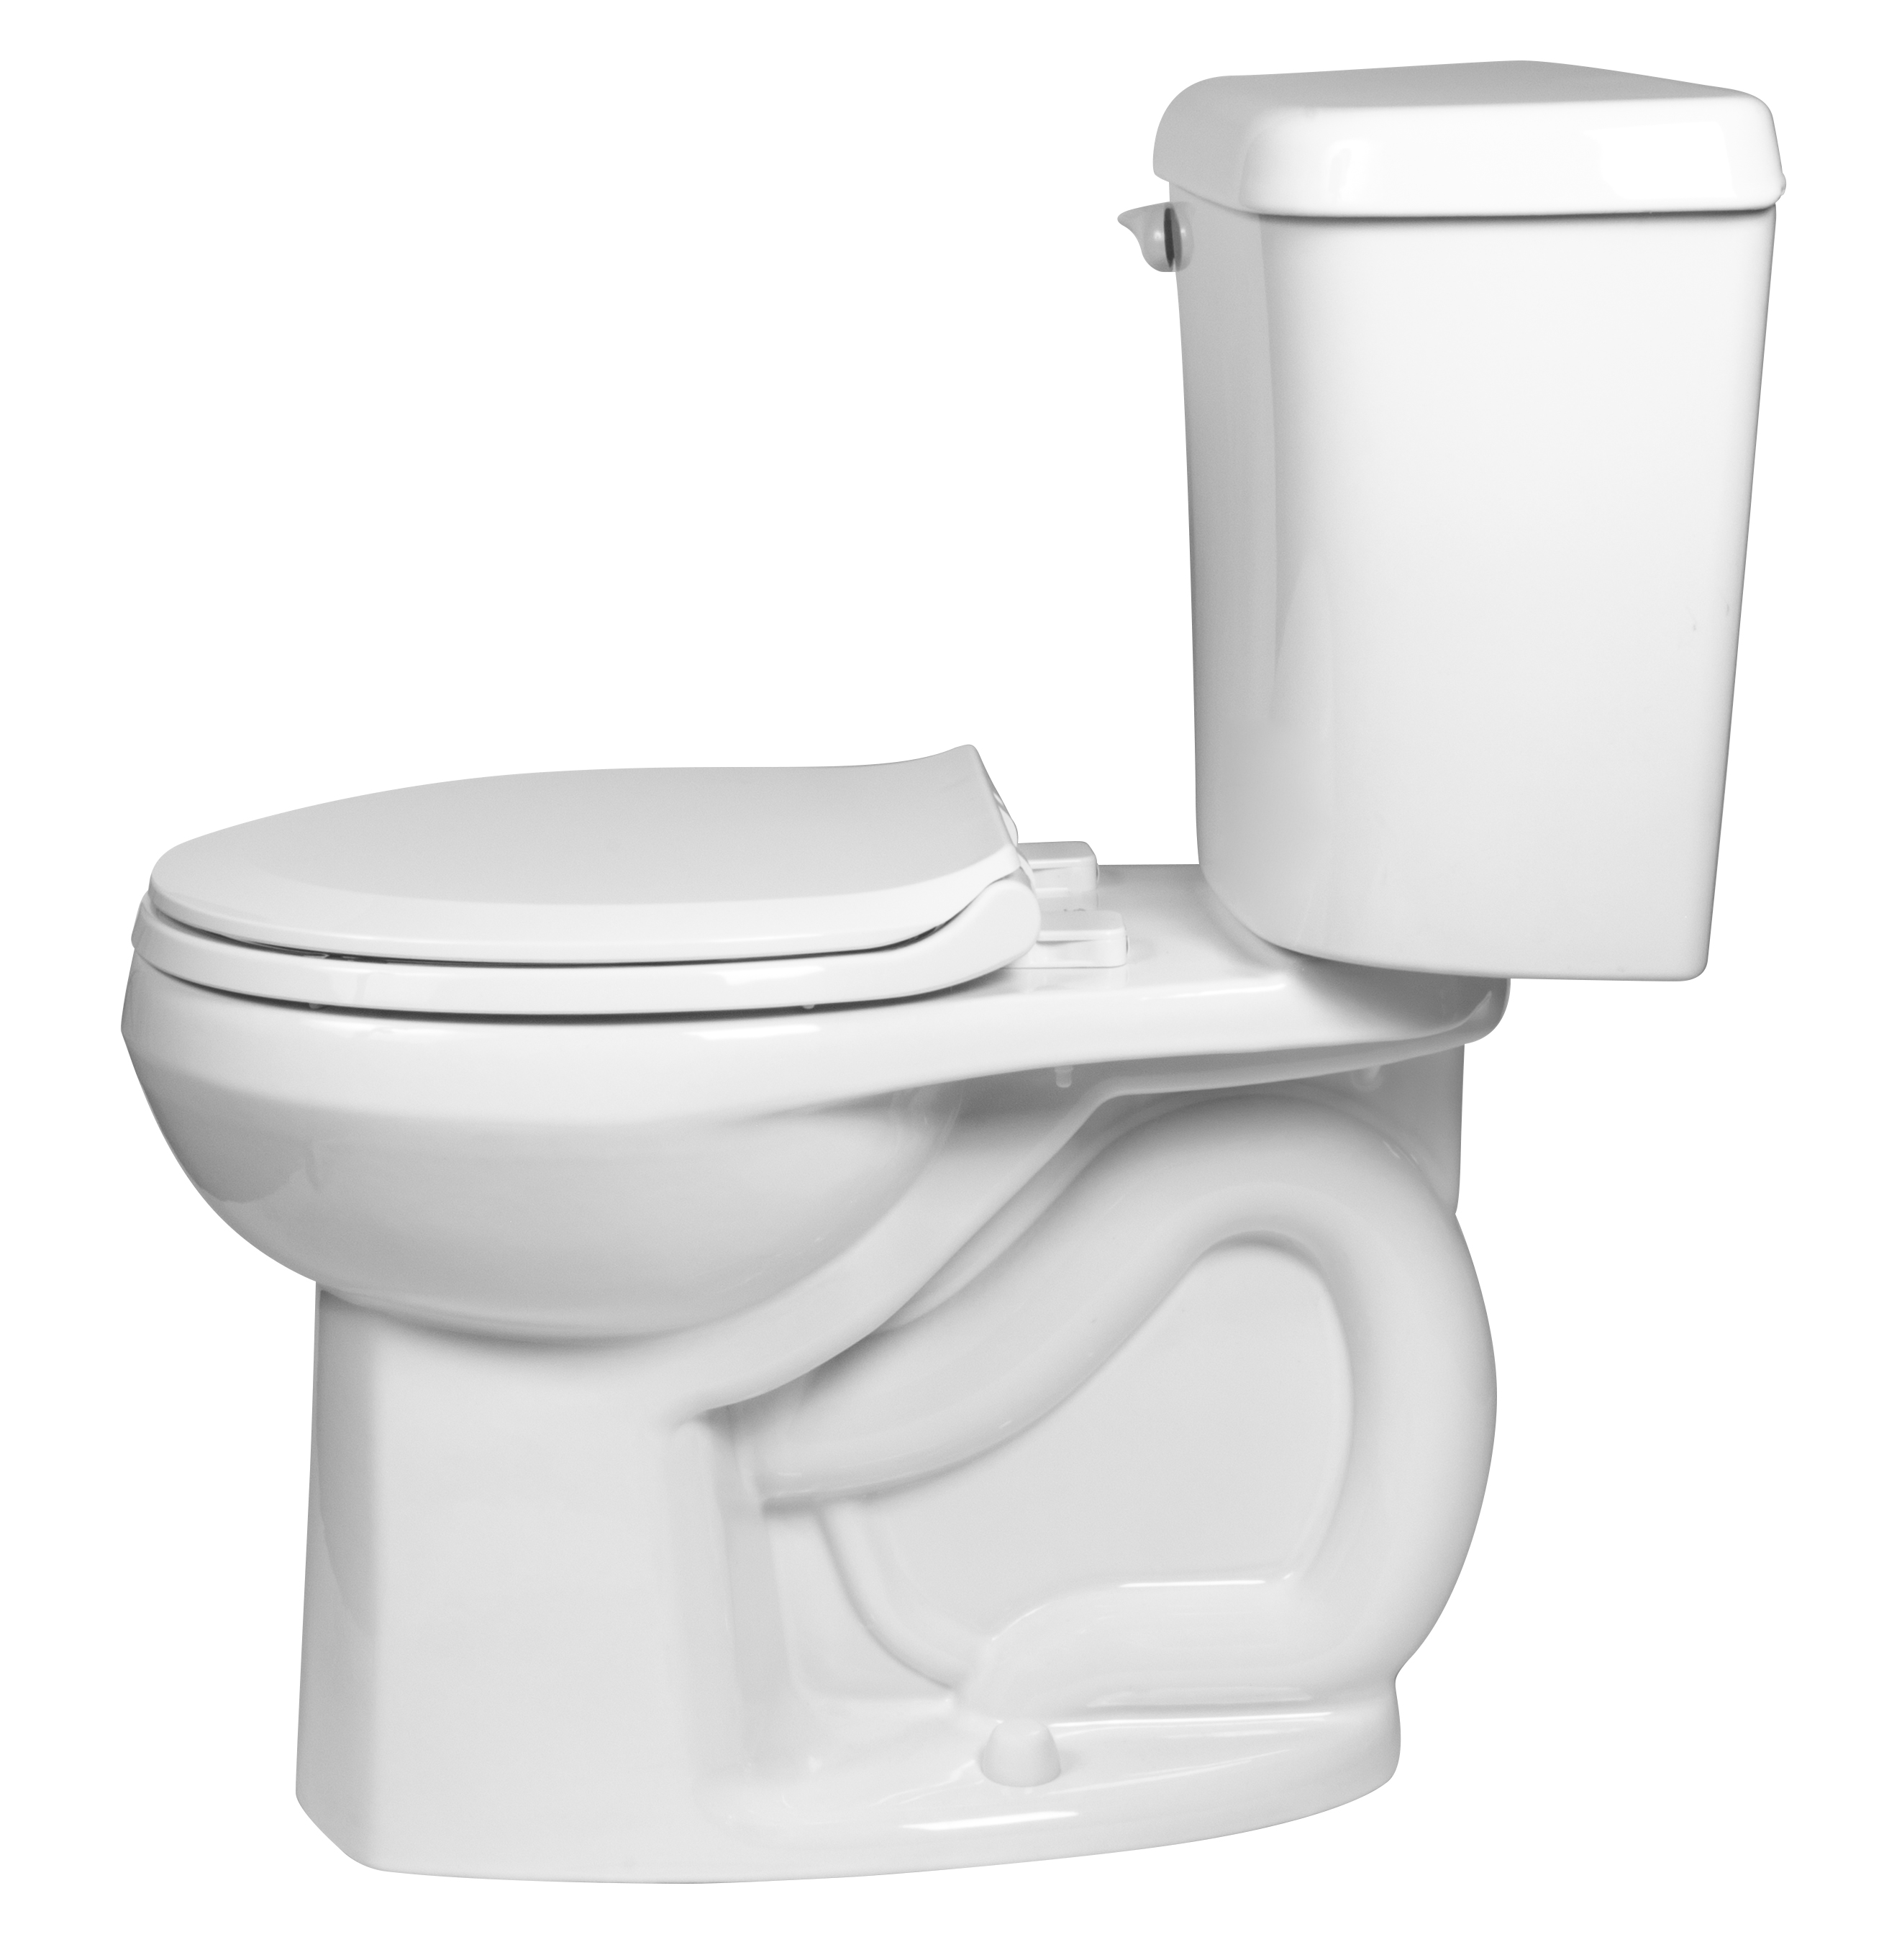 Toilette complète Marina, 2 pièces, 1,28 gpc/4,8 lpc, à cuvette au devant rond à hauteur de chaise et réservoir avec doublure, avec siège